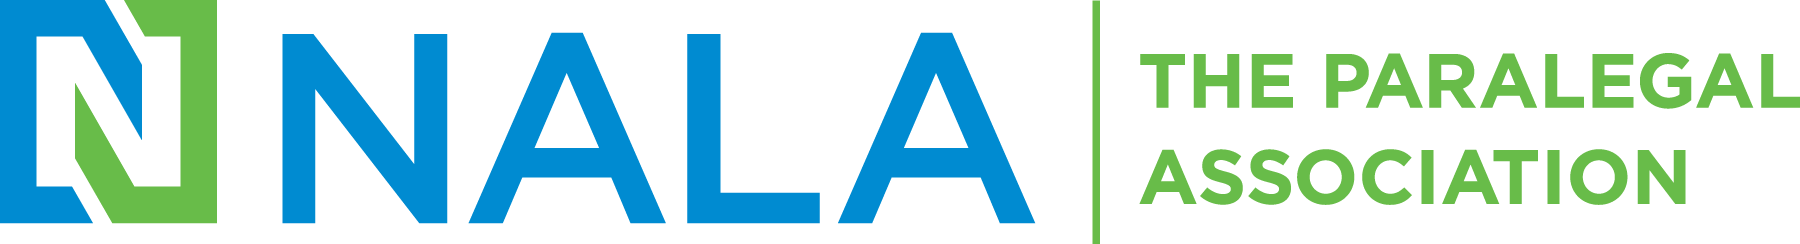 NALA Paralegal Association logo